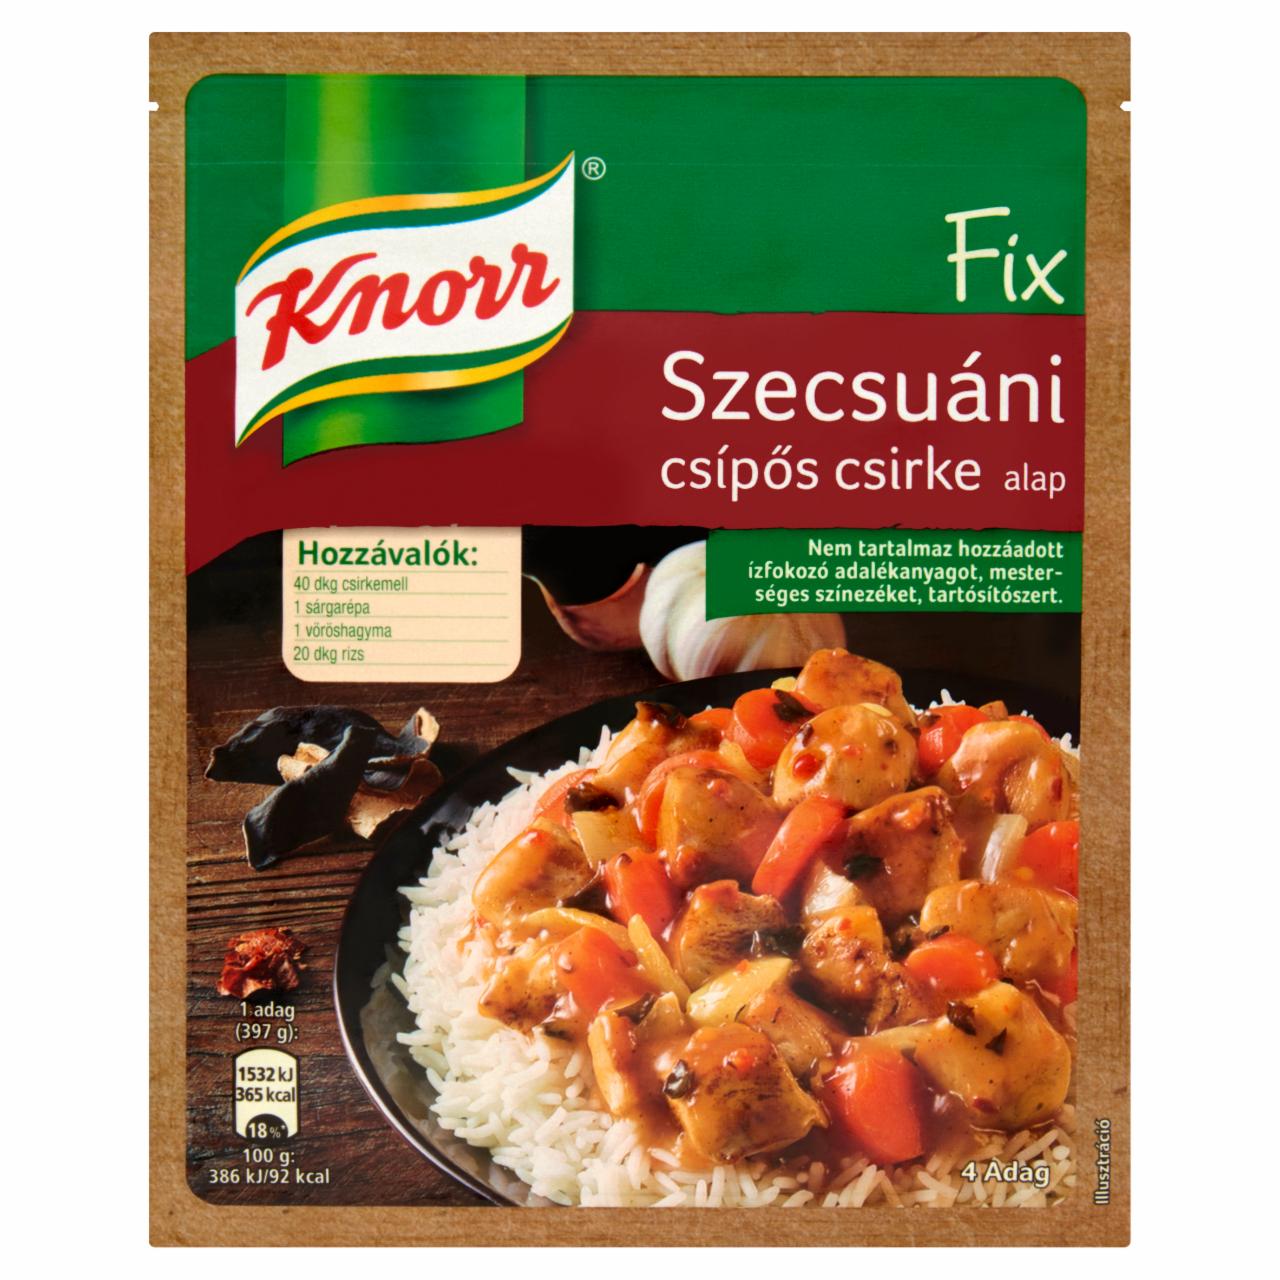 Képek - Knorr Fix szecsuáni csípős csirke alap 37 g